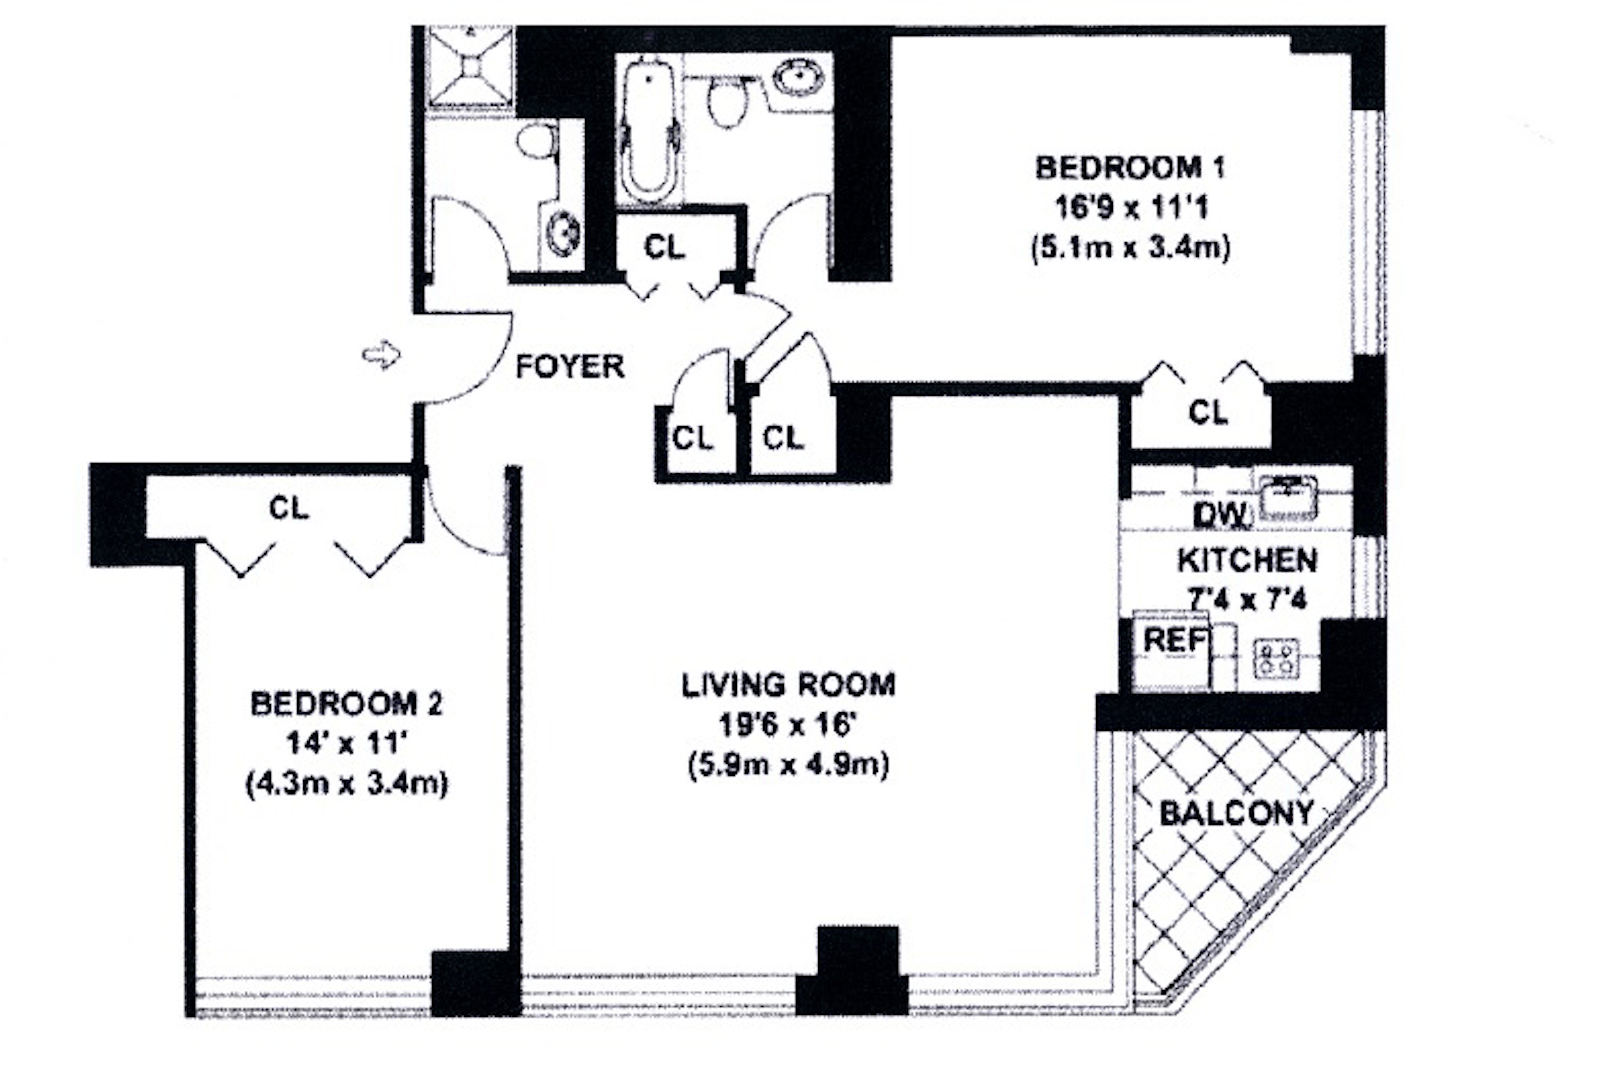 Floorplan for 236 East 47th Street, 30E